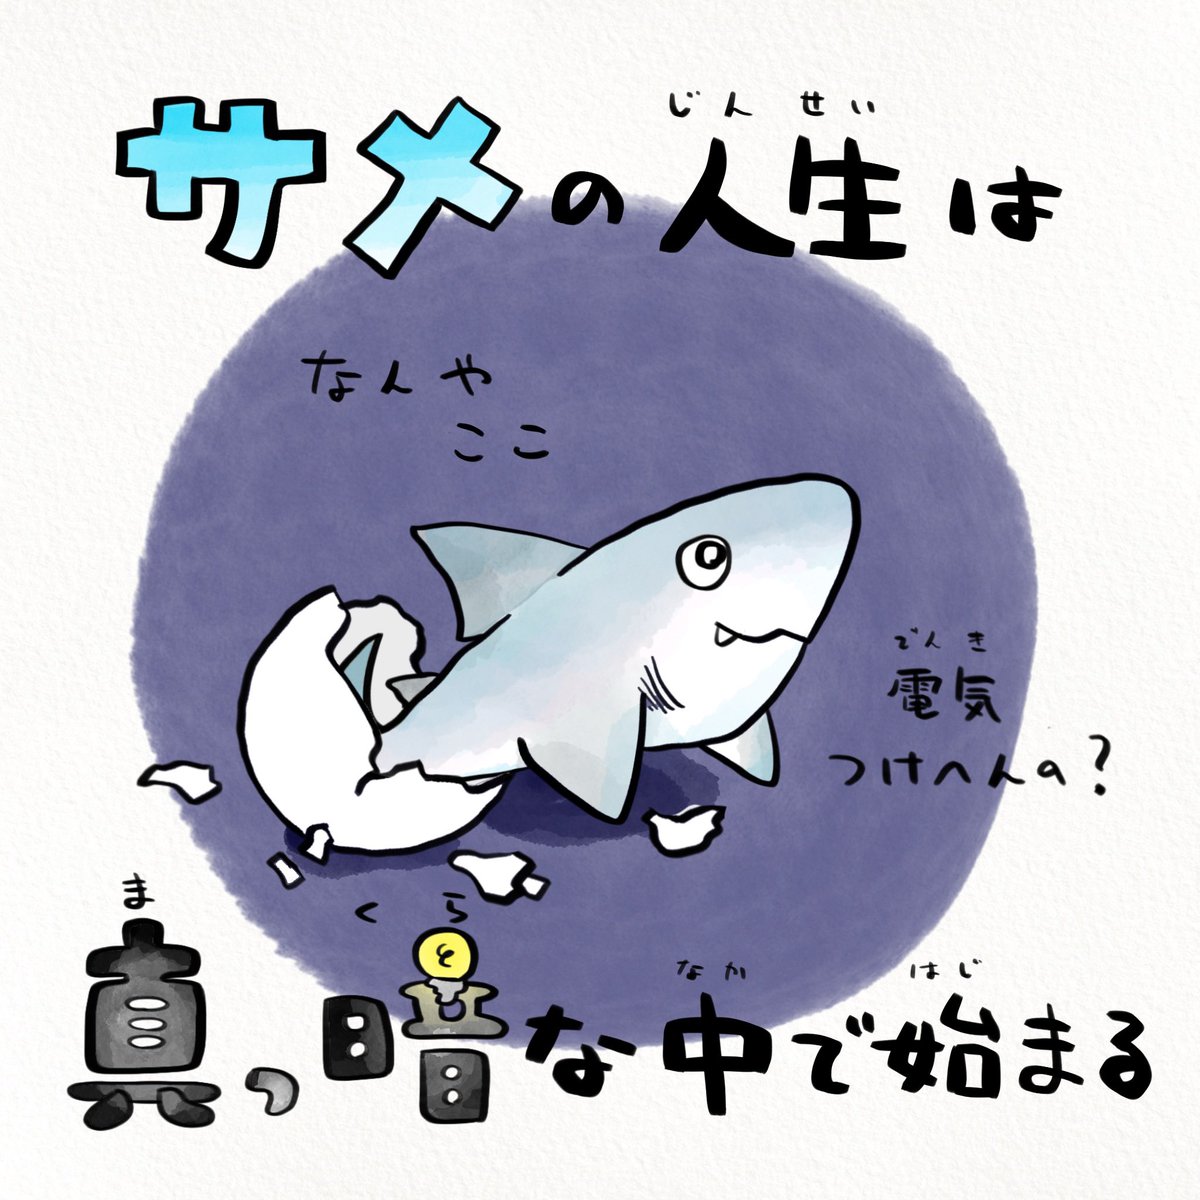 アクアワールド茨城県大洗水族館で絶滅危惧種のサメ・シロワニの繁殖に日本で初めて成功!生まれるまでも人生ベリーハードなシロワニを観に行こう🦈 